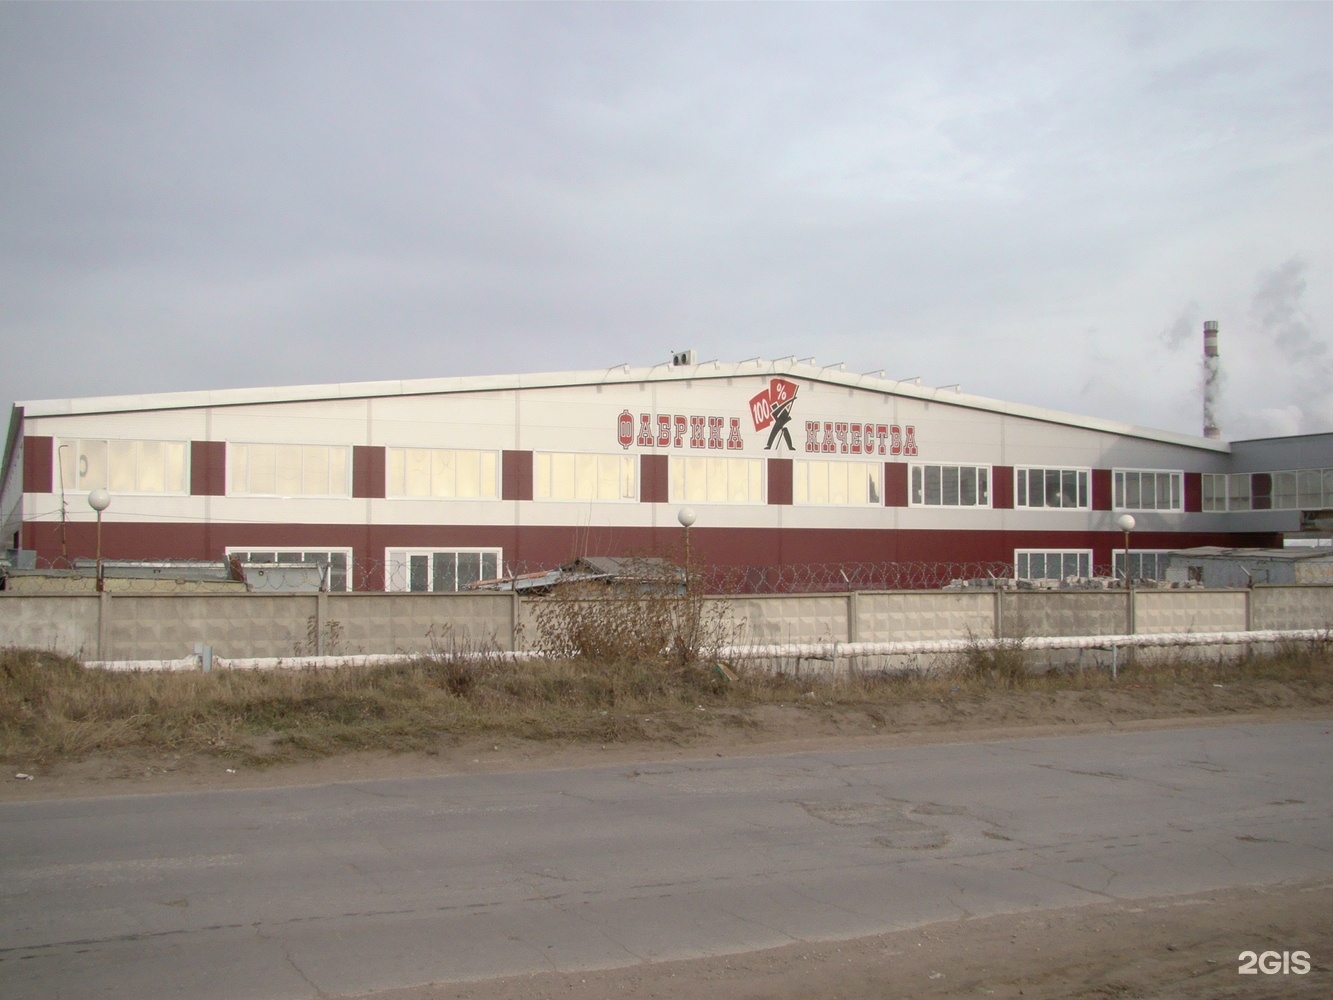 Сайт фабрики качества тольятти. Мясокомбинат здание. Фасады зданий мясокомбината. Фабрика качества завод.